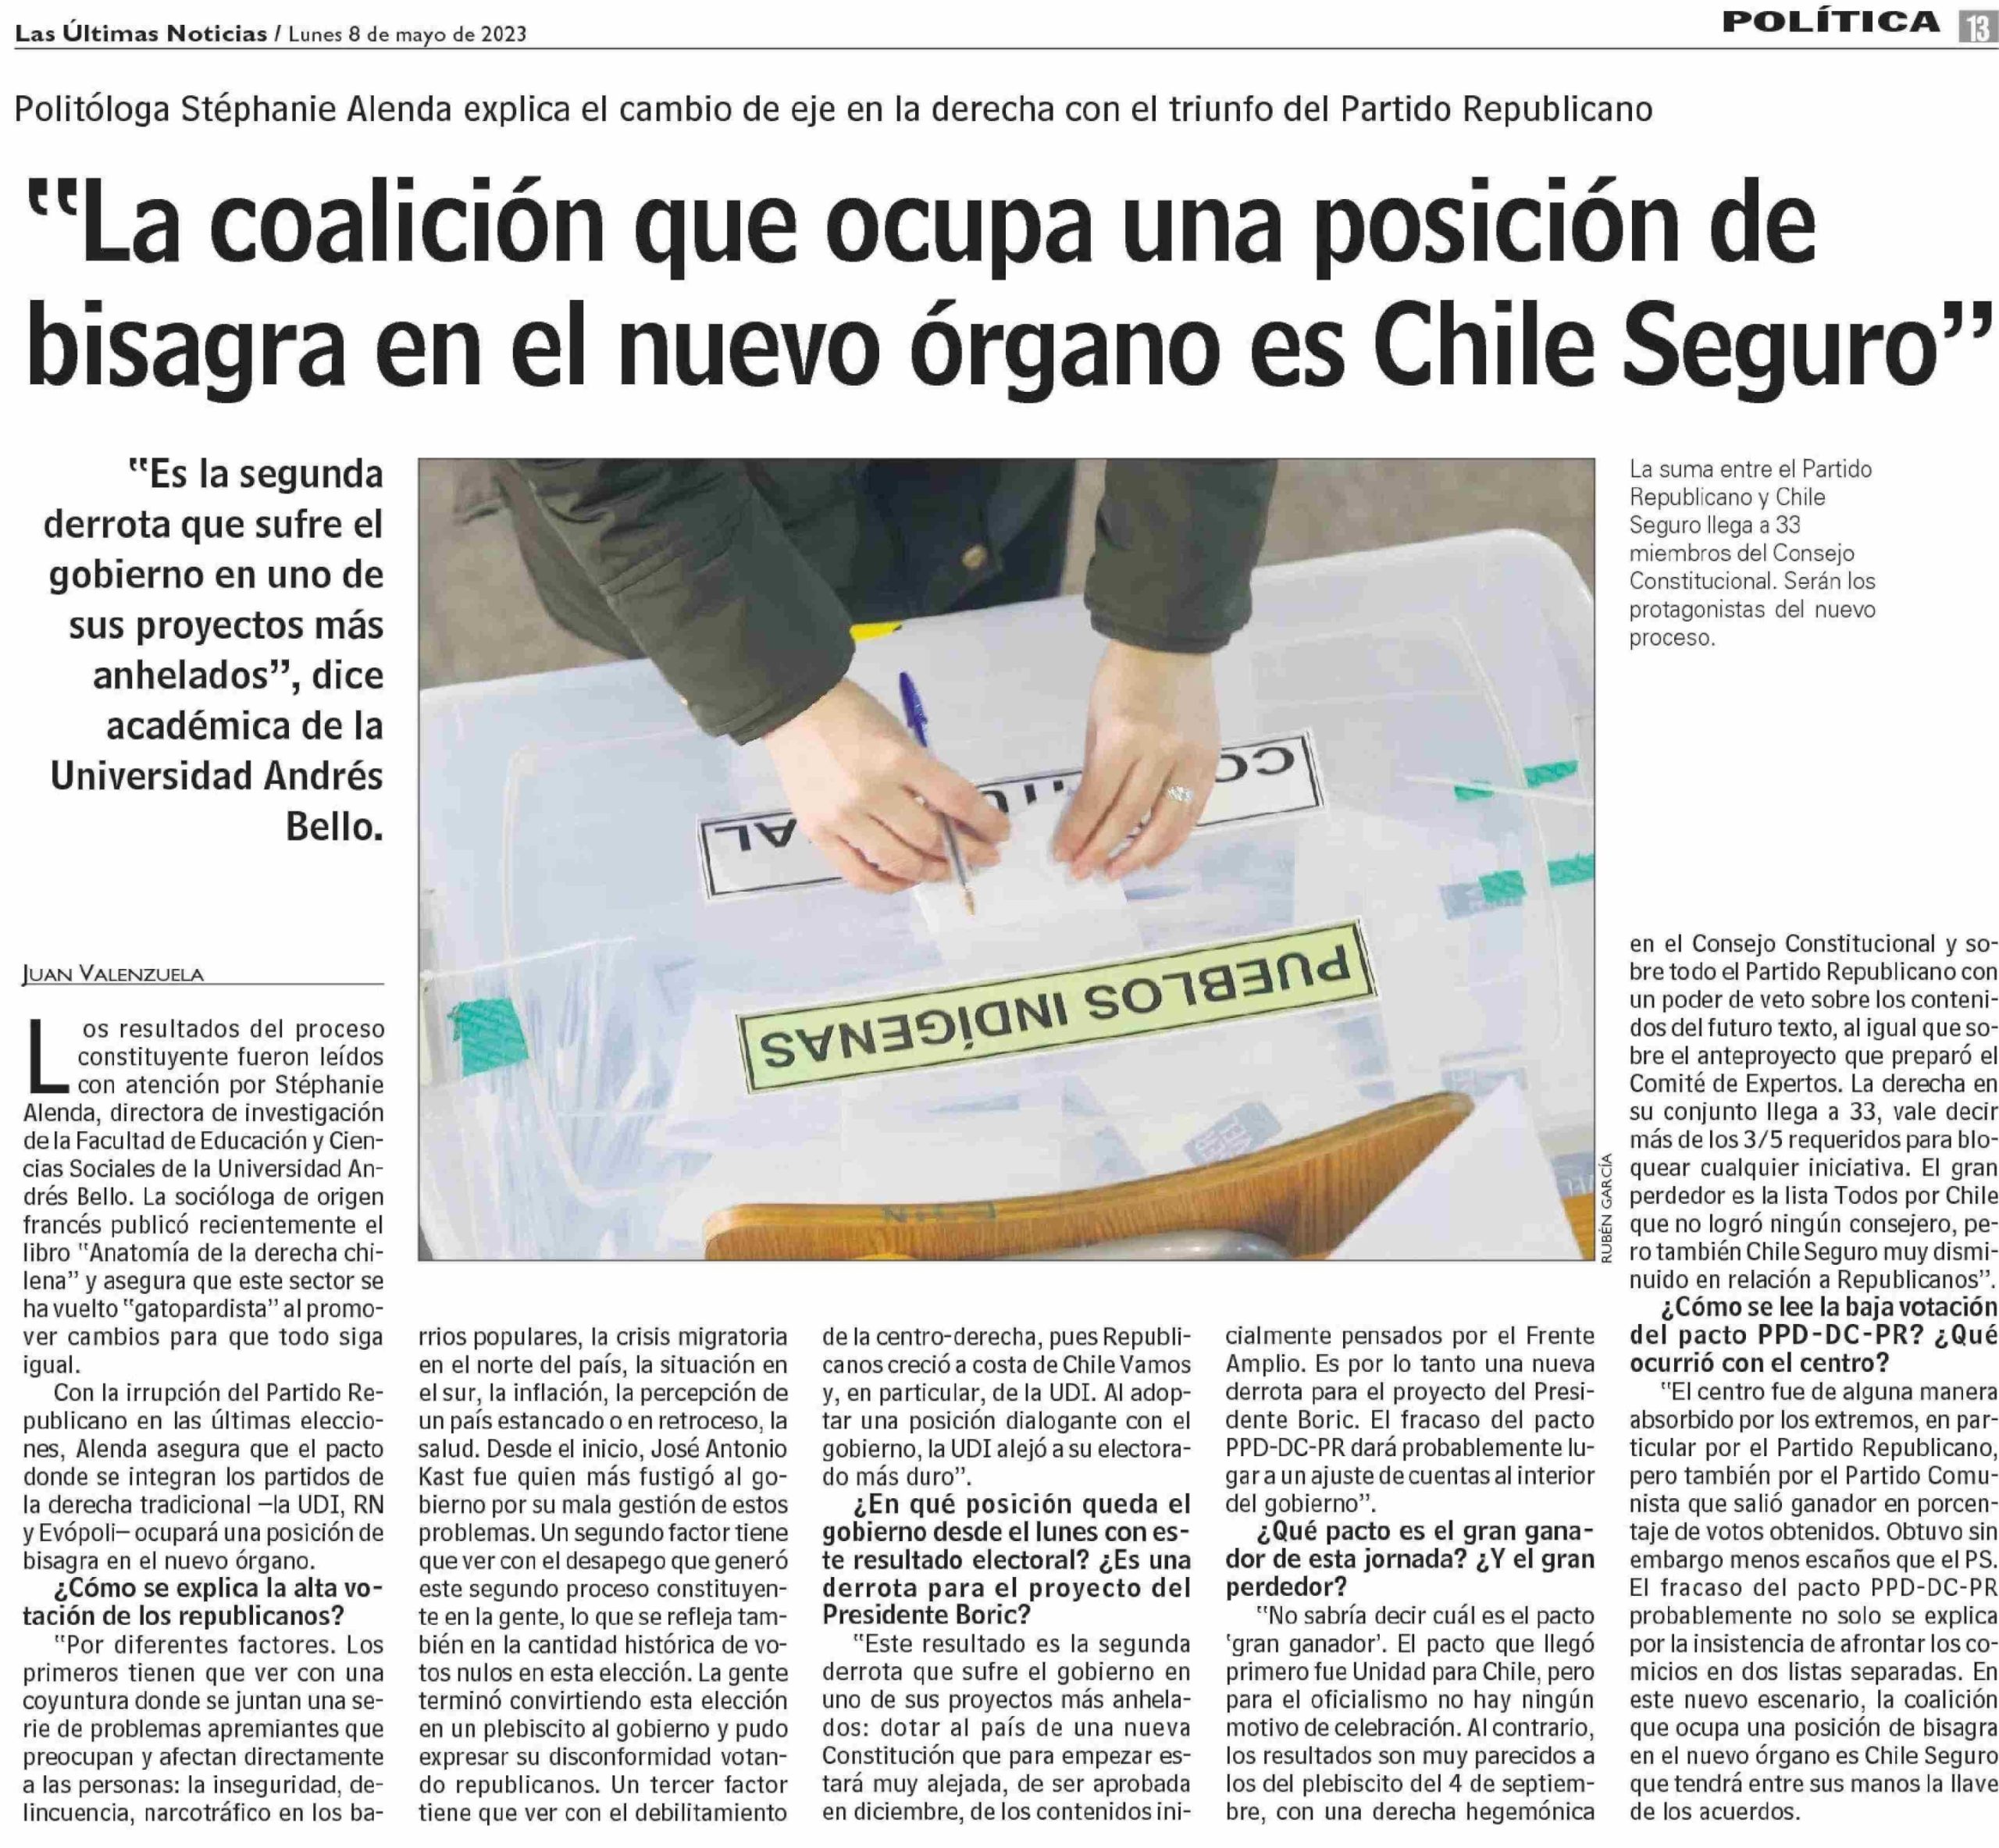 La coalición que ocupa una posición de bisagra en el nuevo órgano es Chile Seguro